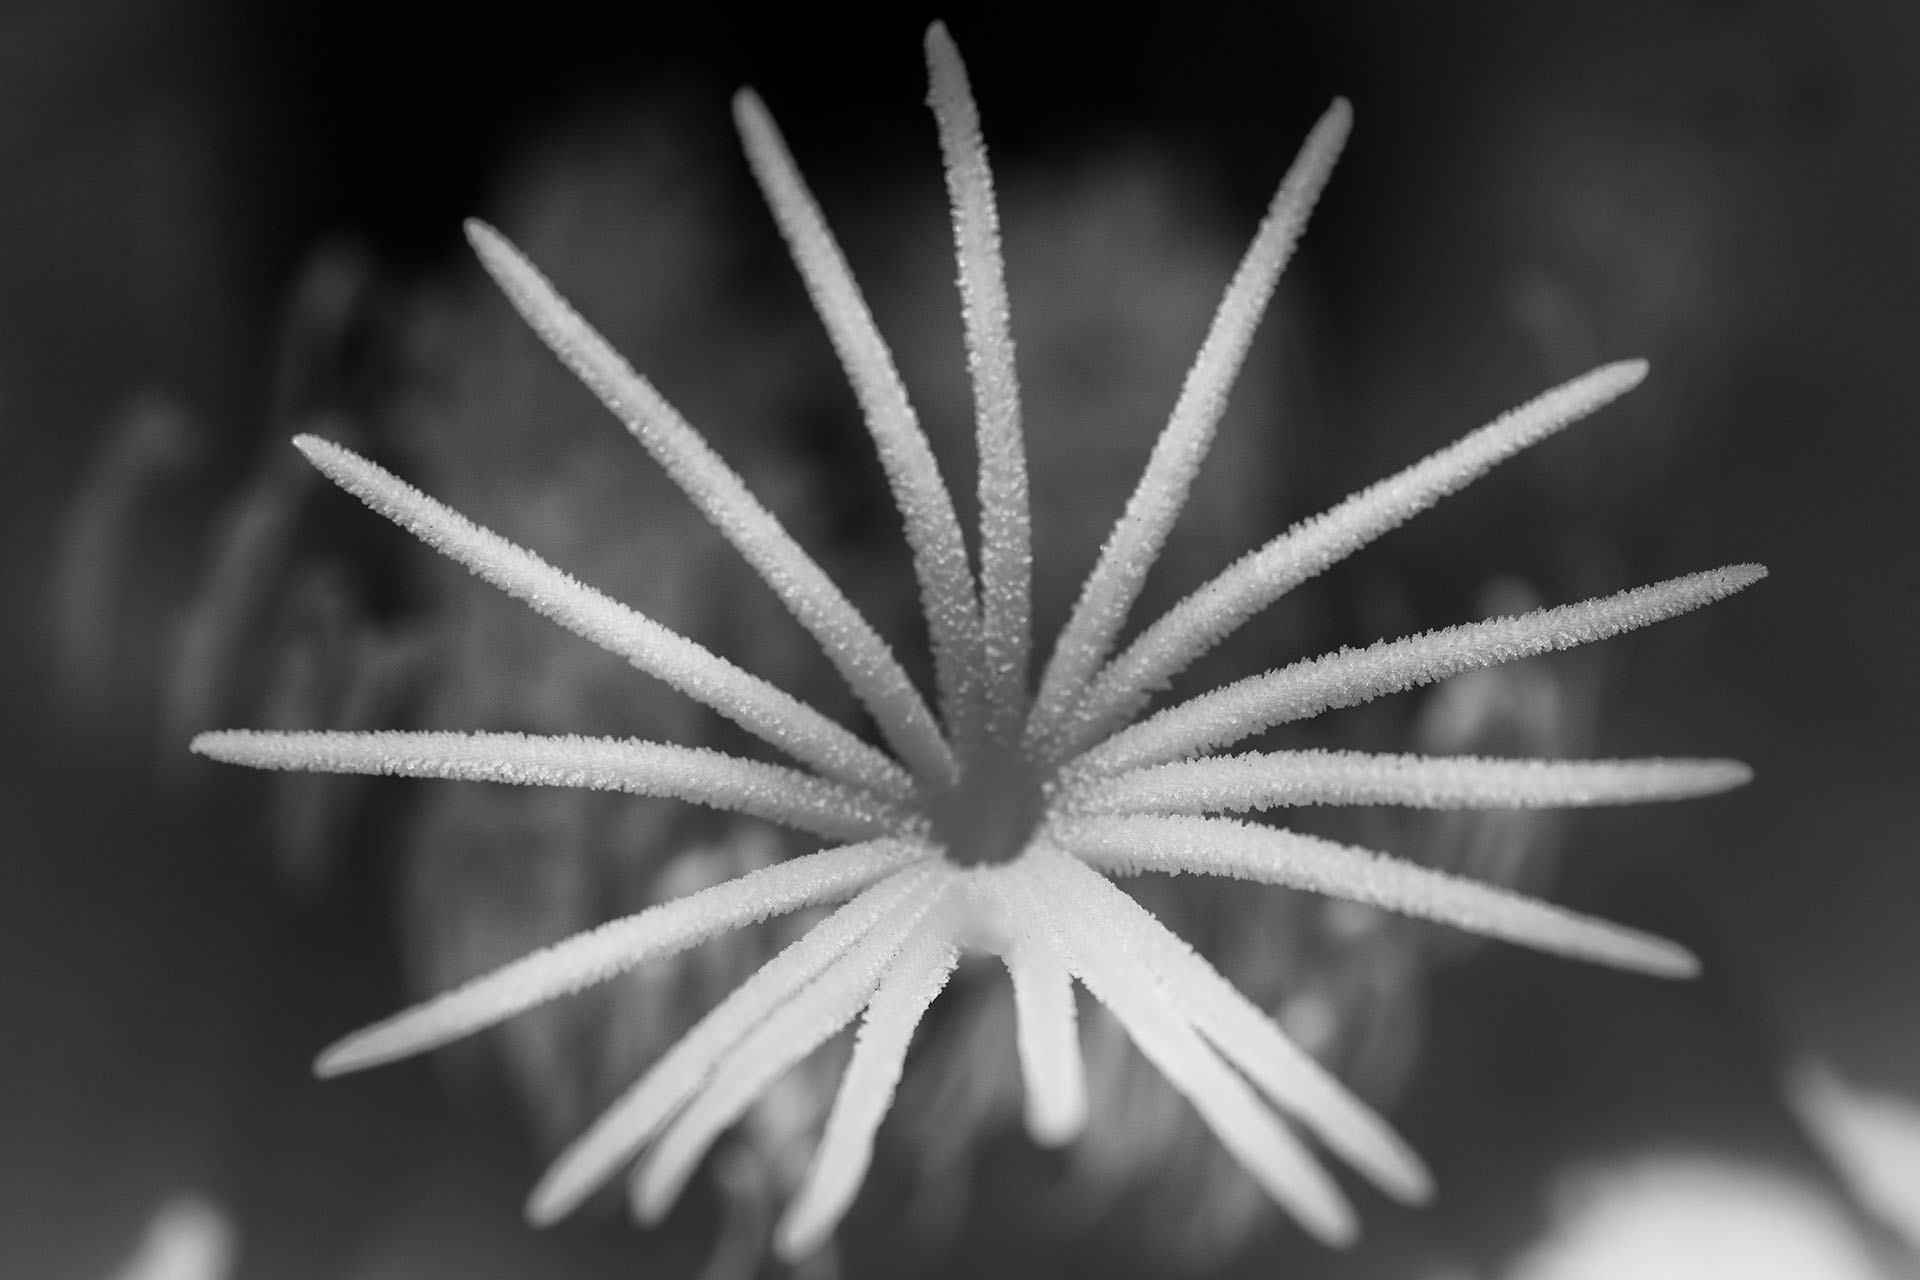 Cactus Flower Detail III © Harold Davis